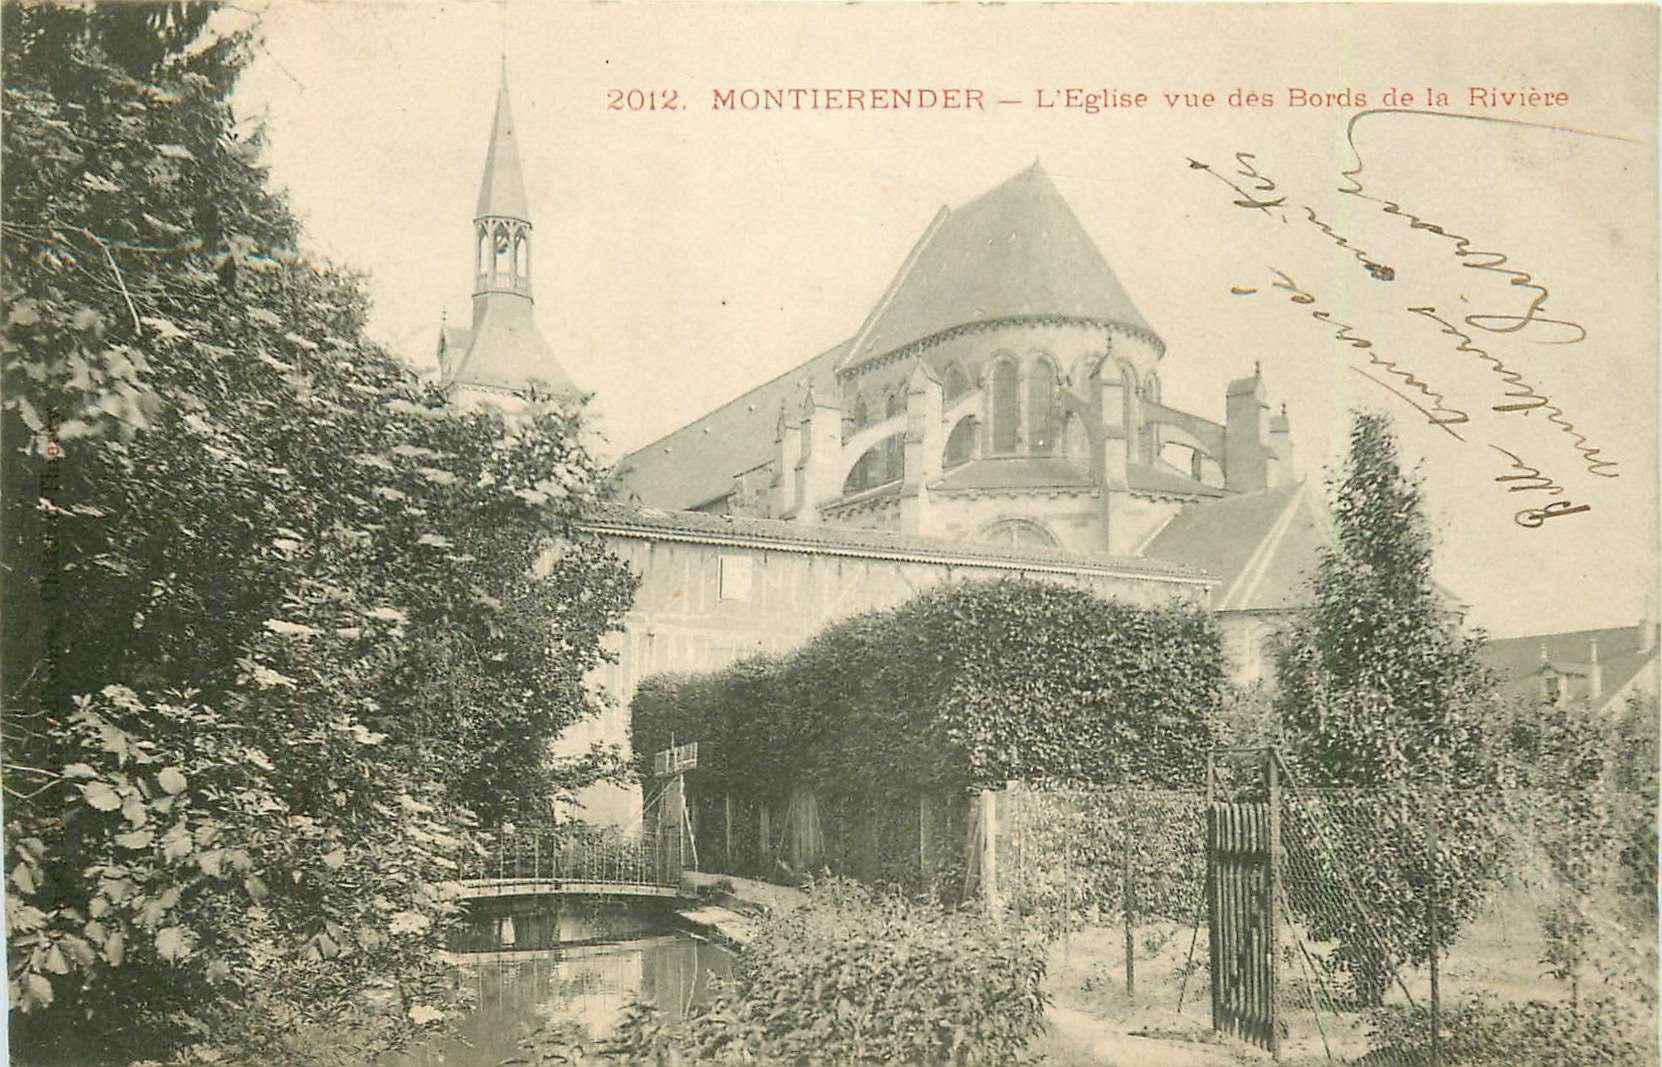 52 MONTIERENDER ou MONTIER-EN-DER. L'Eglise bords de la Rivière 1903